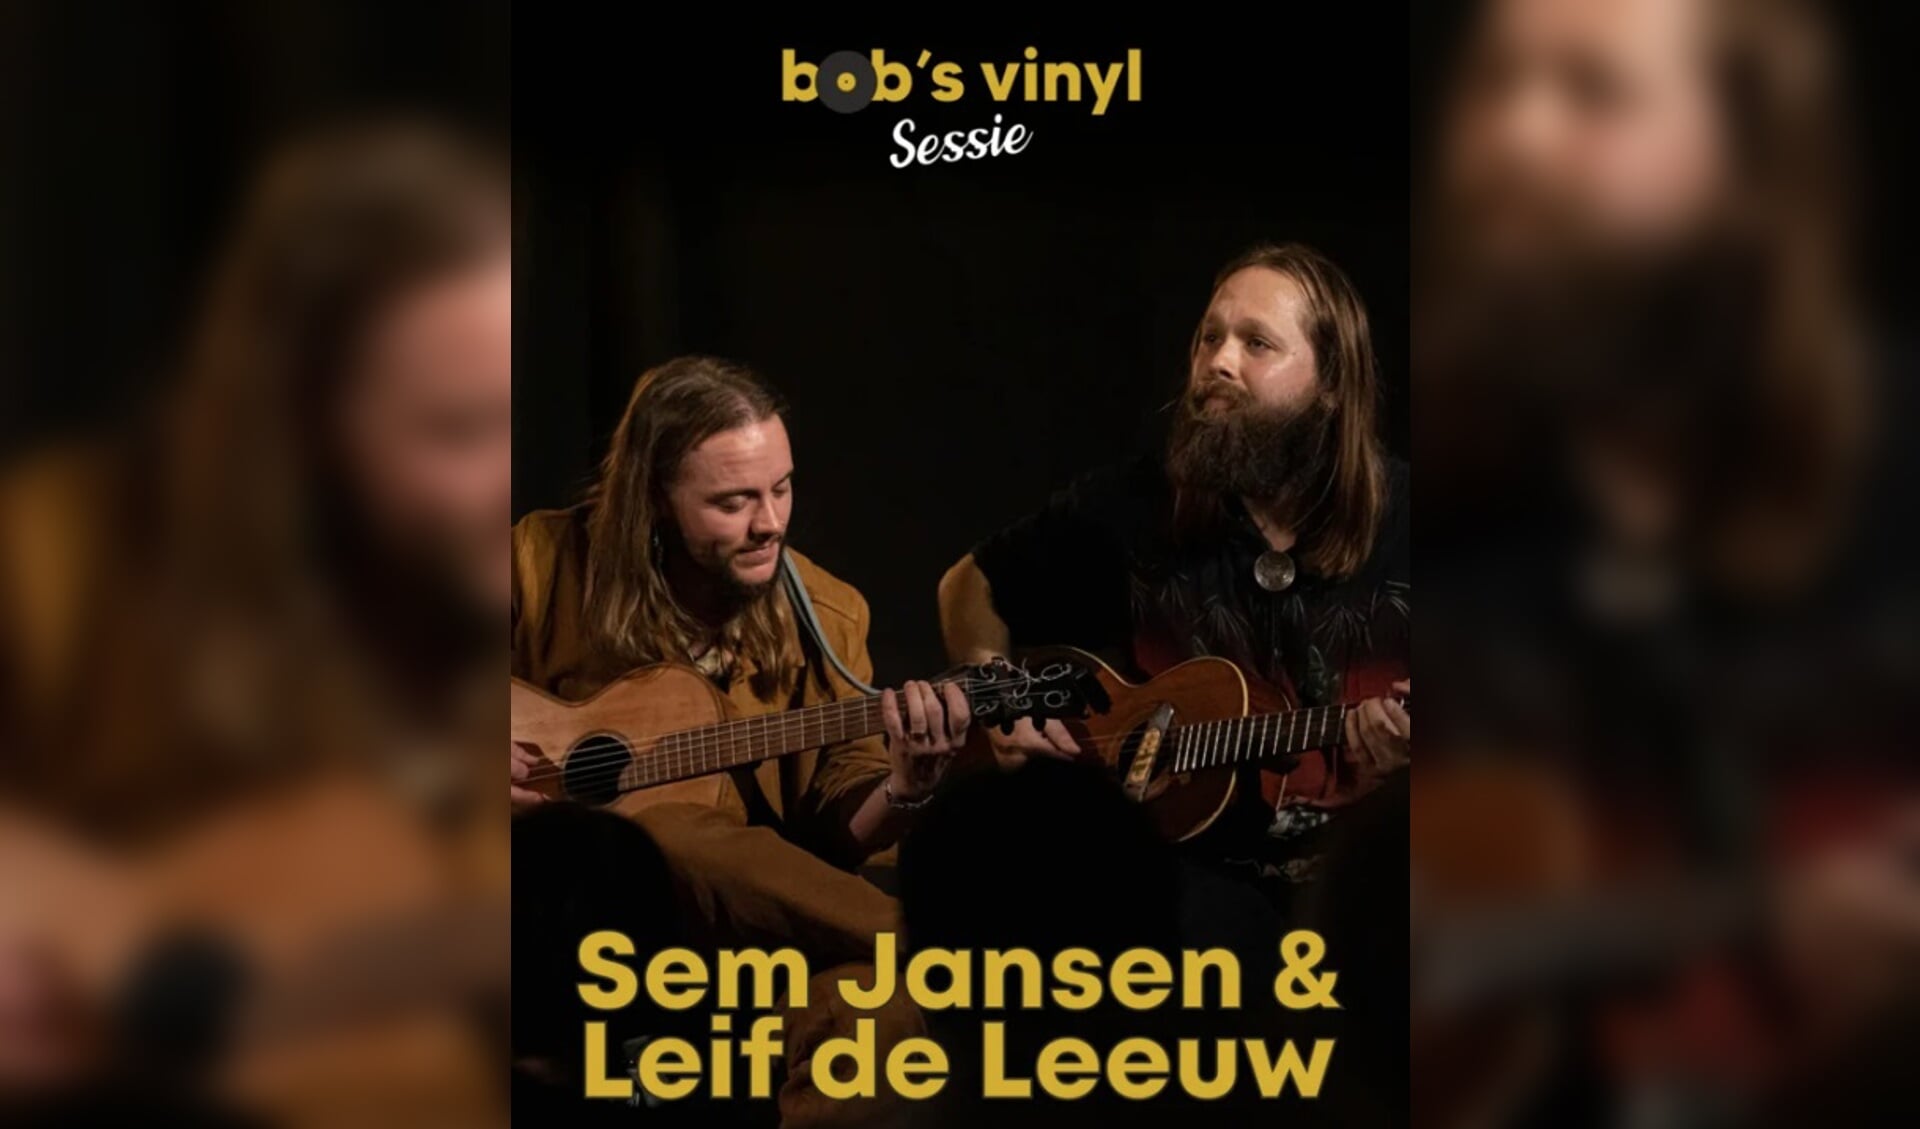 Bob's Vinyl Sessie met Sem Jansen & Leif de Leeuw